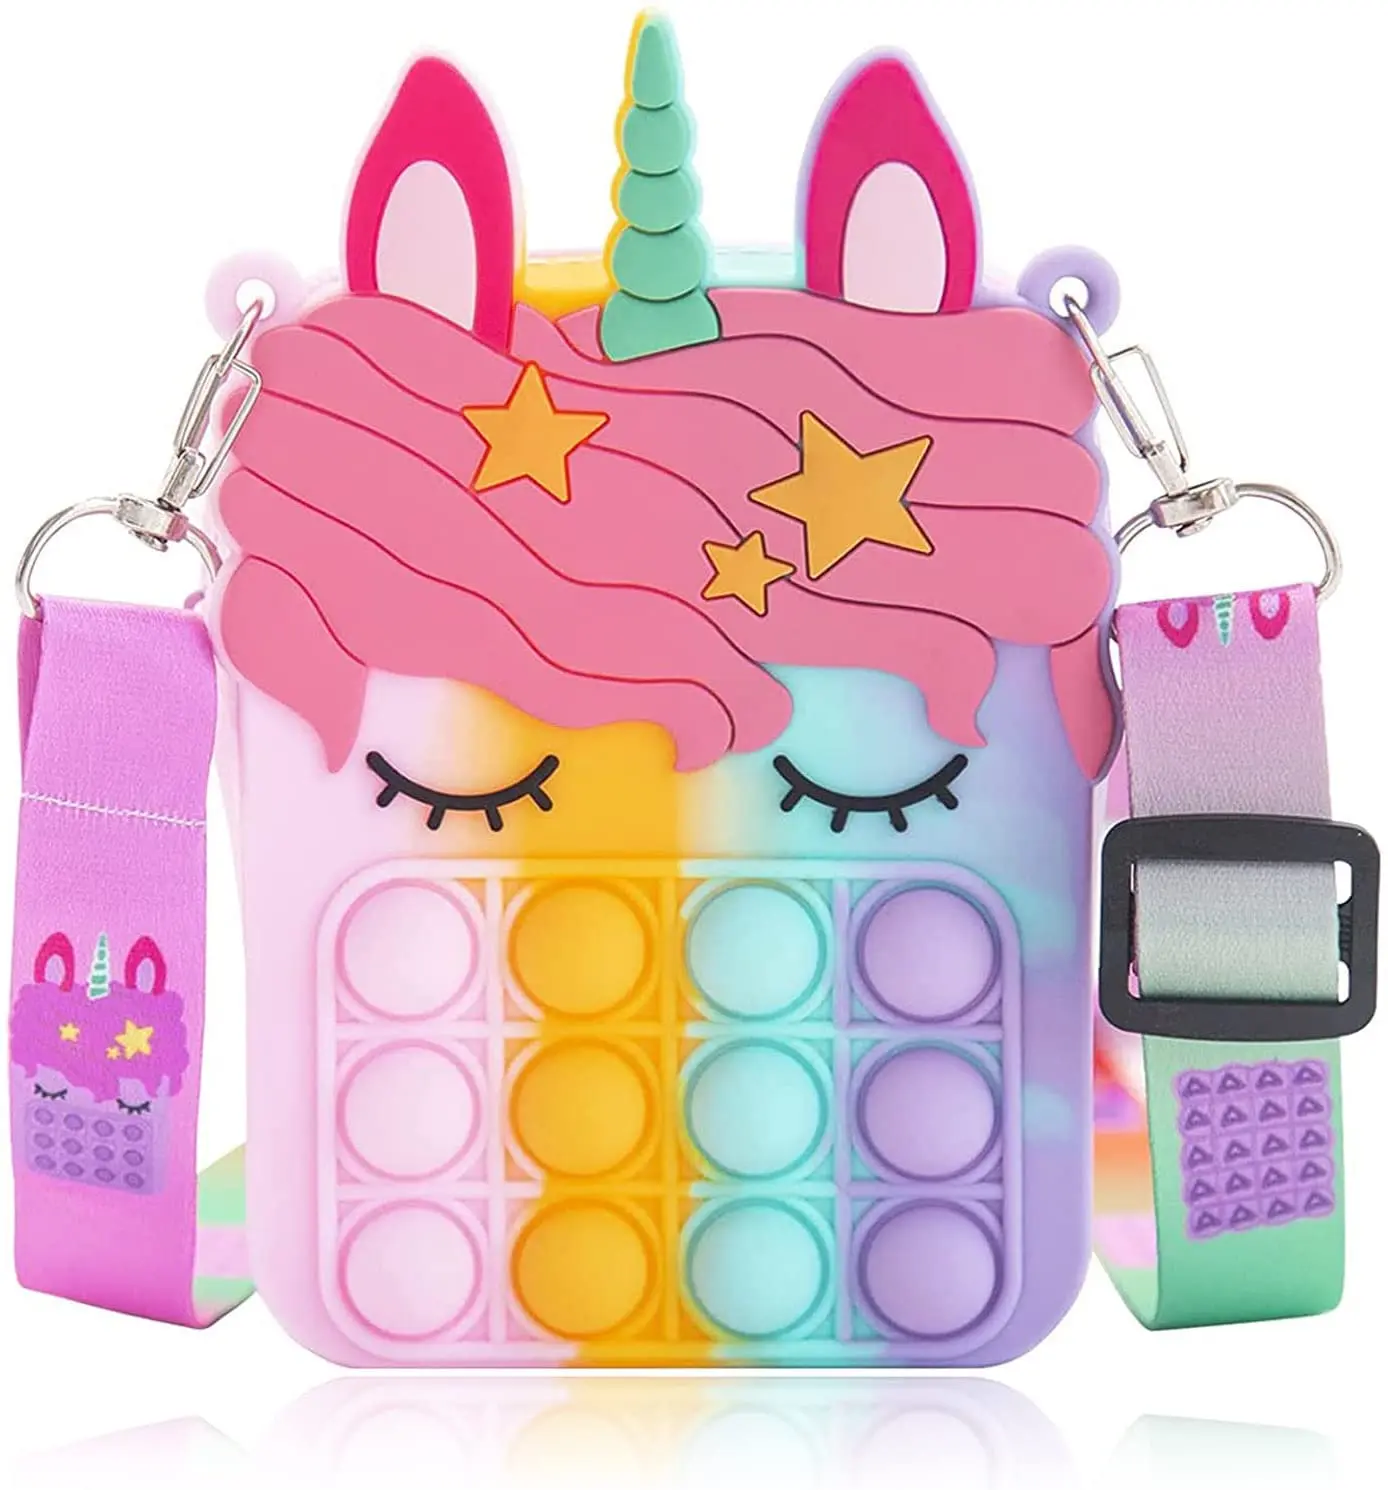 

Pop Shoulder Bag Fidget Toy,Fidget Packs Toy Crossbody Bag to Relieve Stress,Silicone Push Pop Bubble Purse